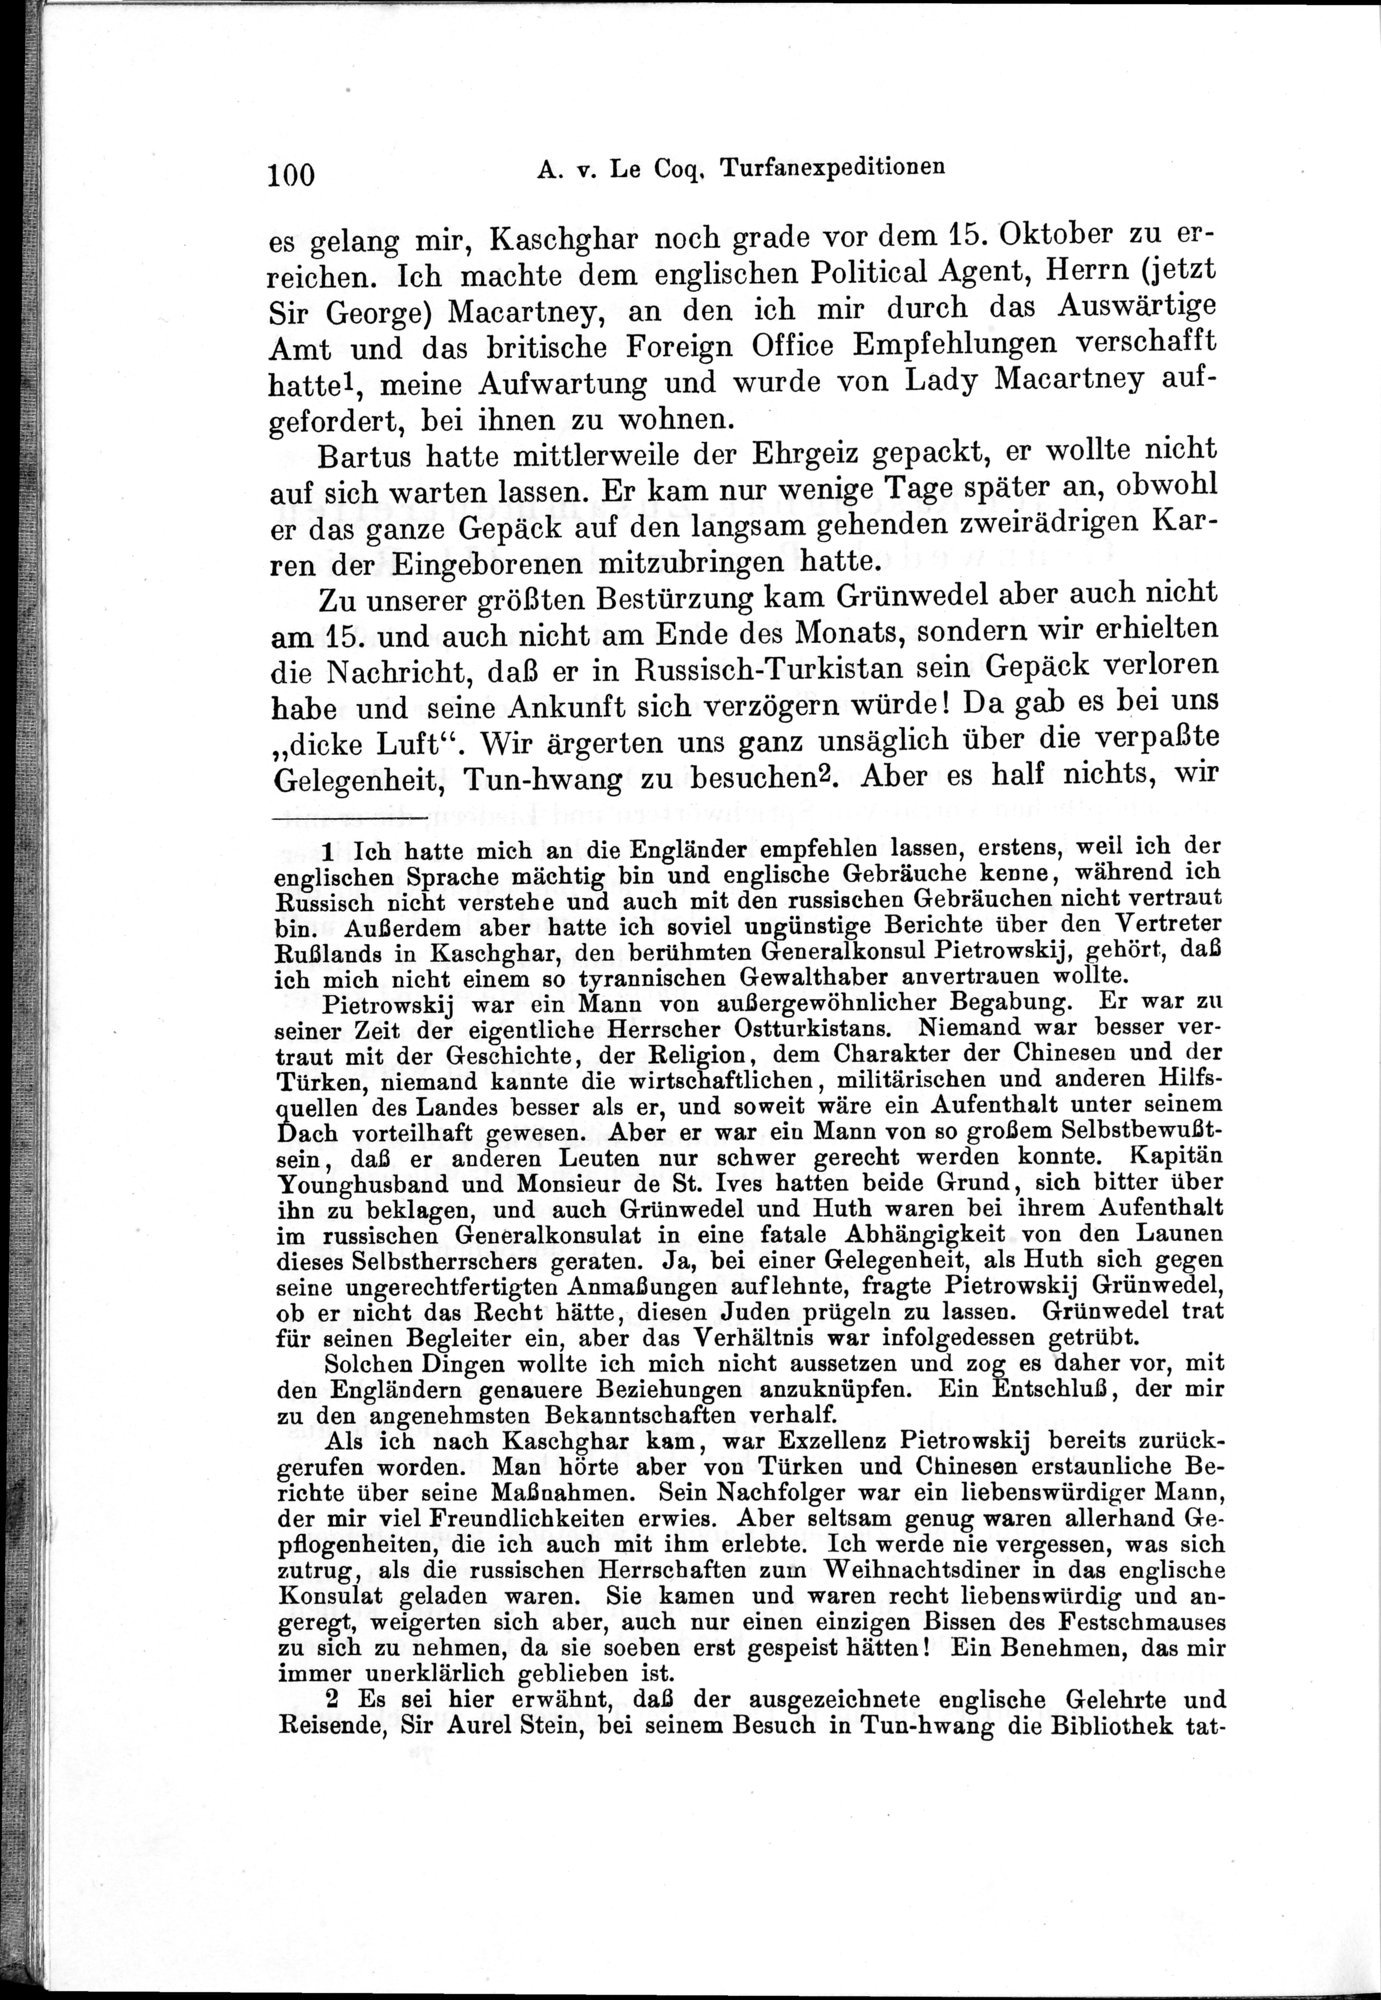 Auf Hellas Spuren in Ostturkistan : vol.1 / Page 146 (Grayscale High Resolution Image)